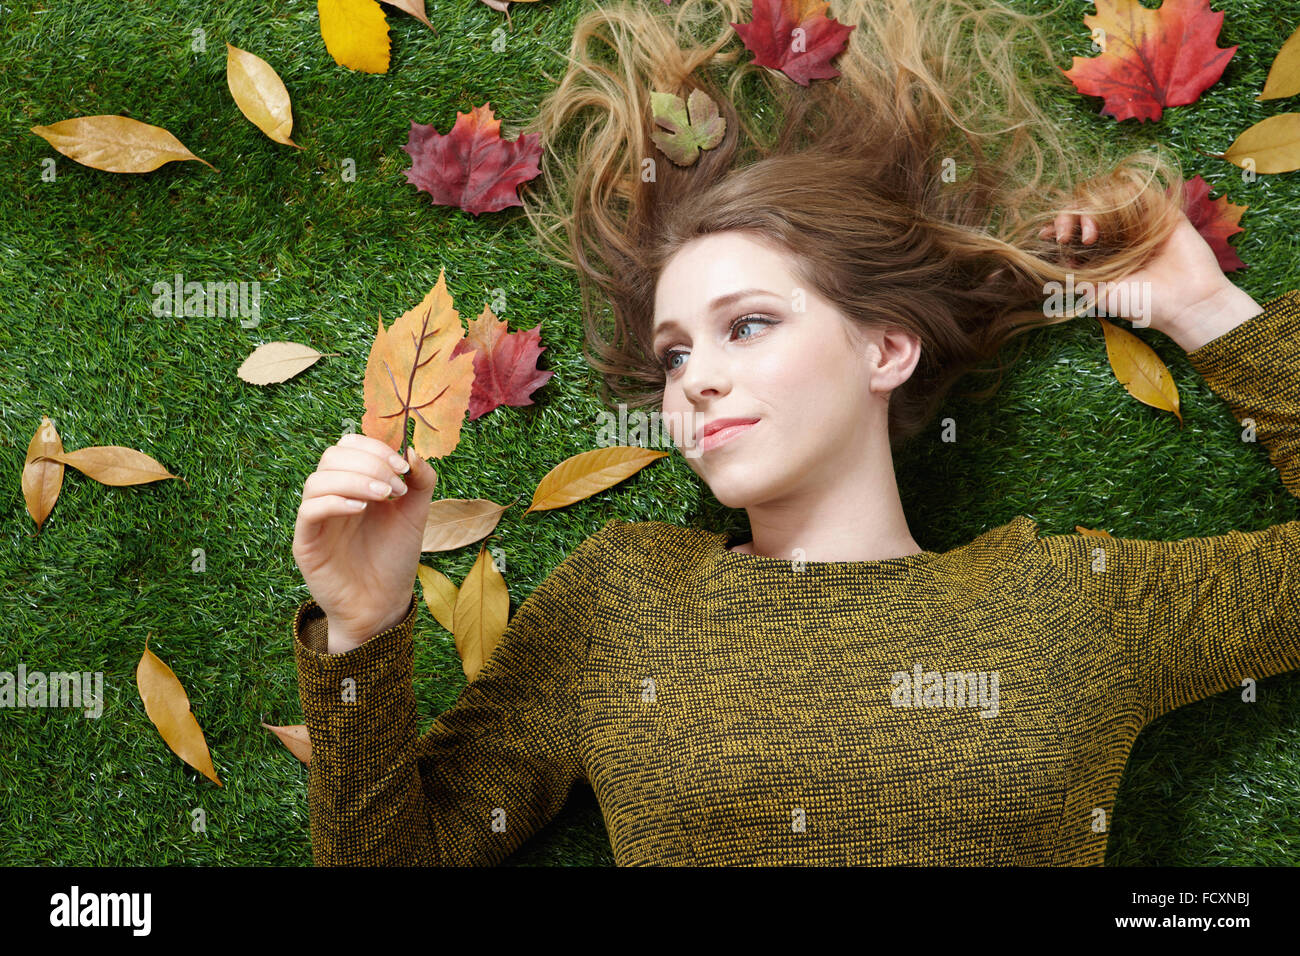 Retrato de mujer joven con pelo largo acostado sobre la hierba con hojas caídas Foto de stock